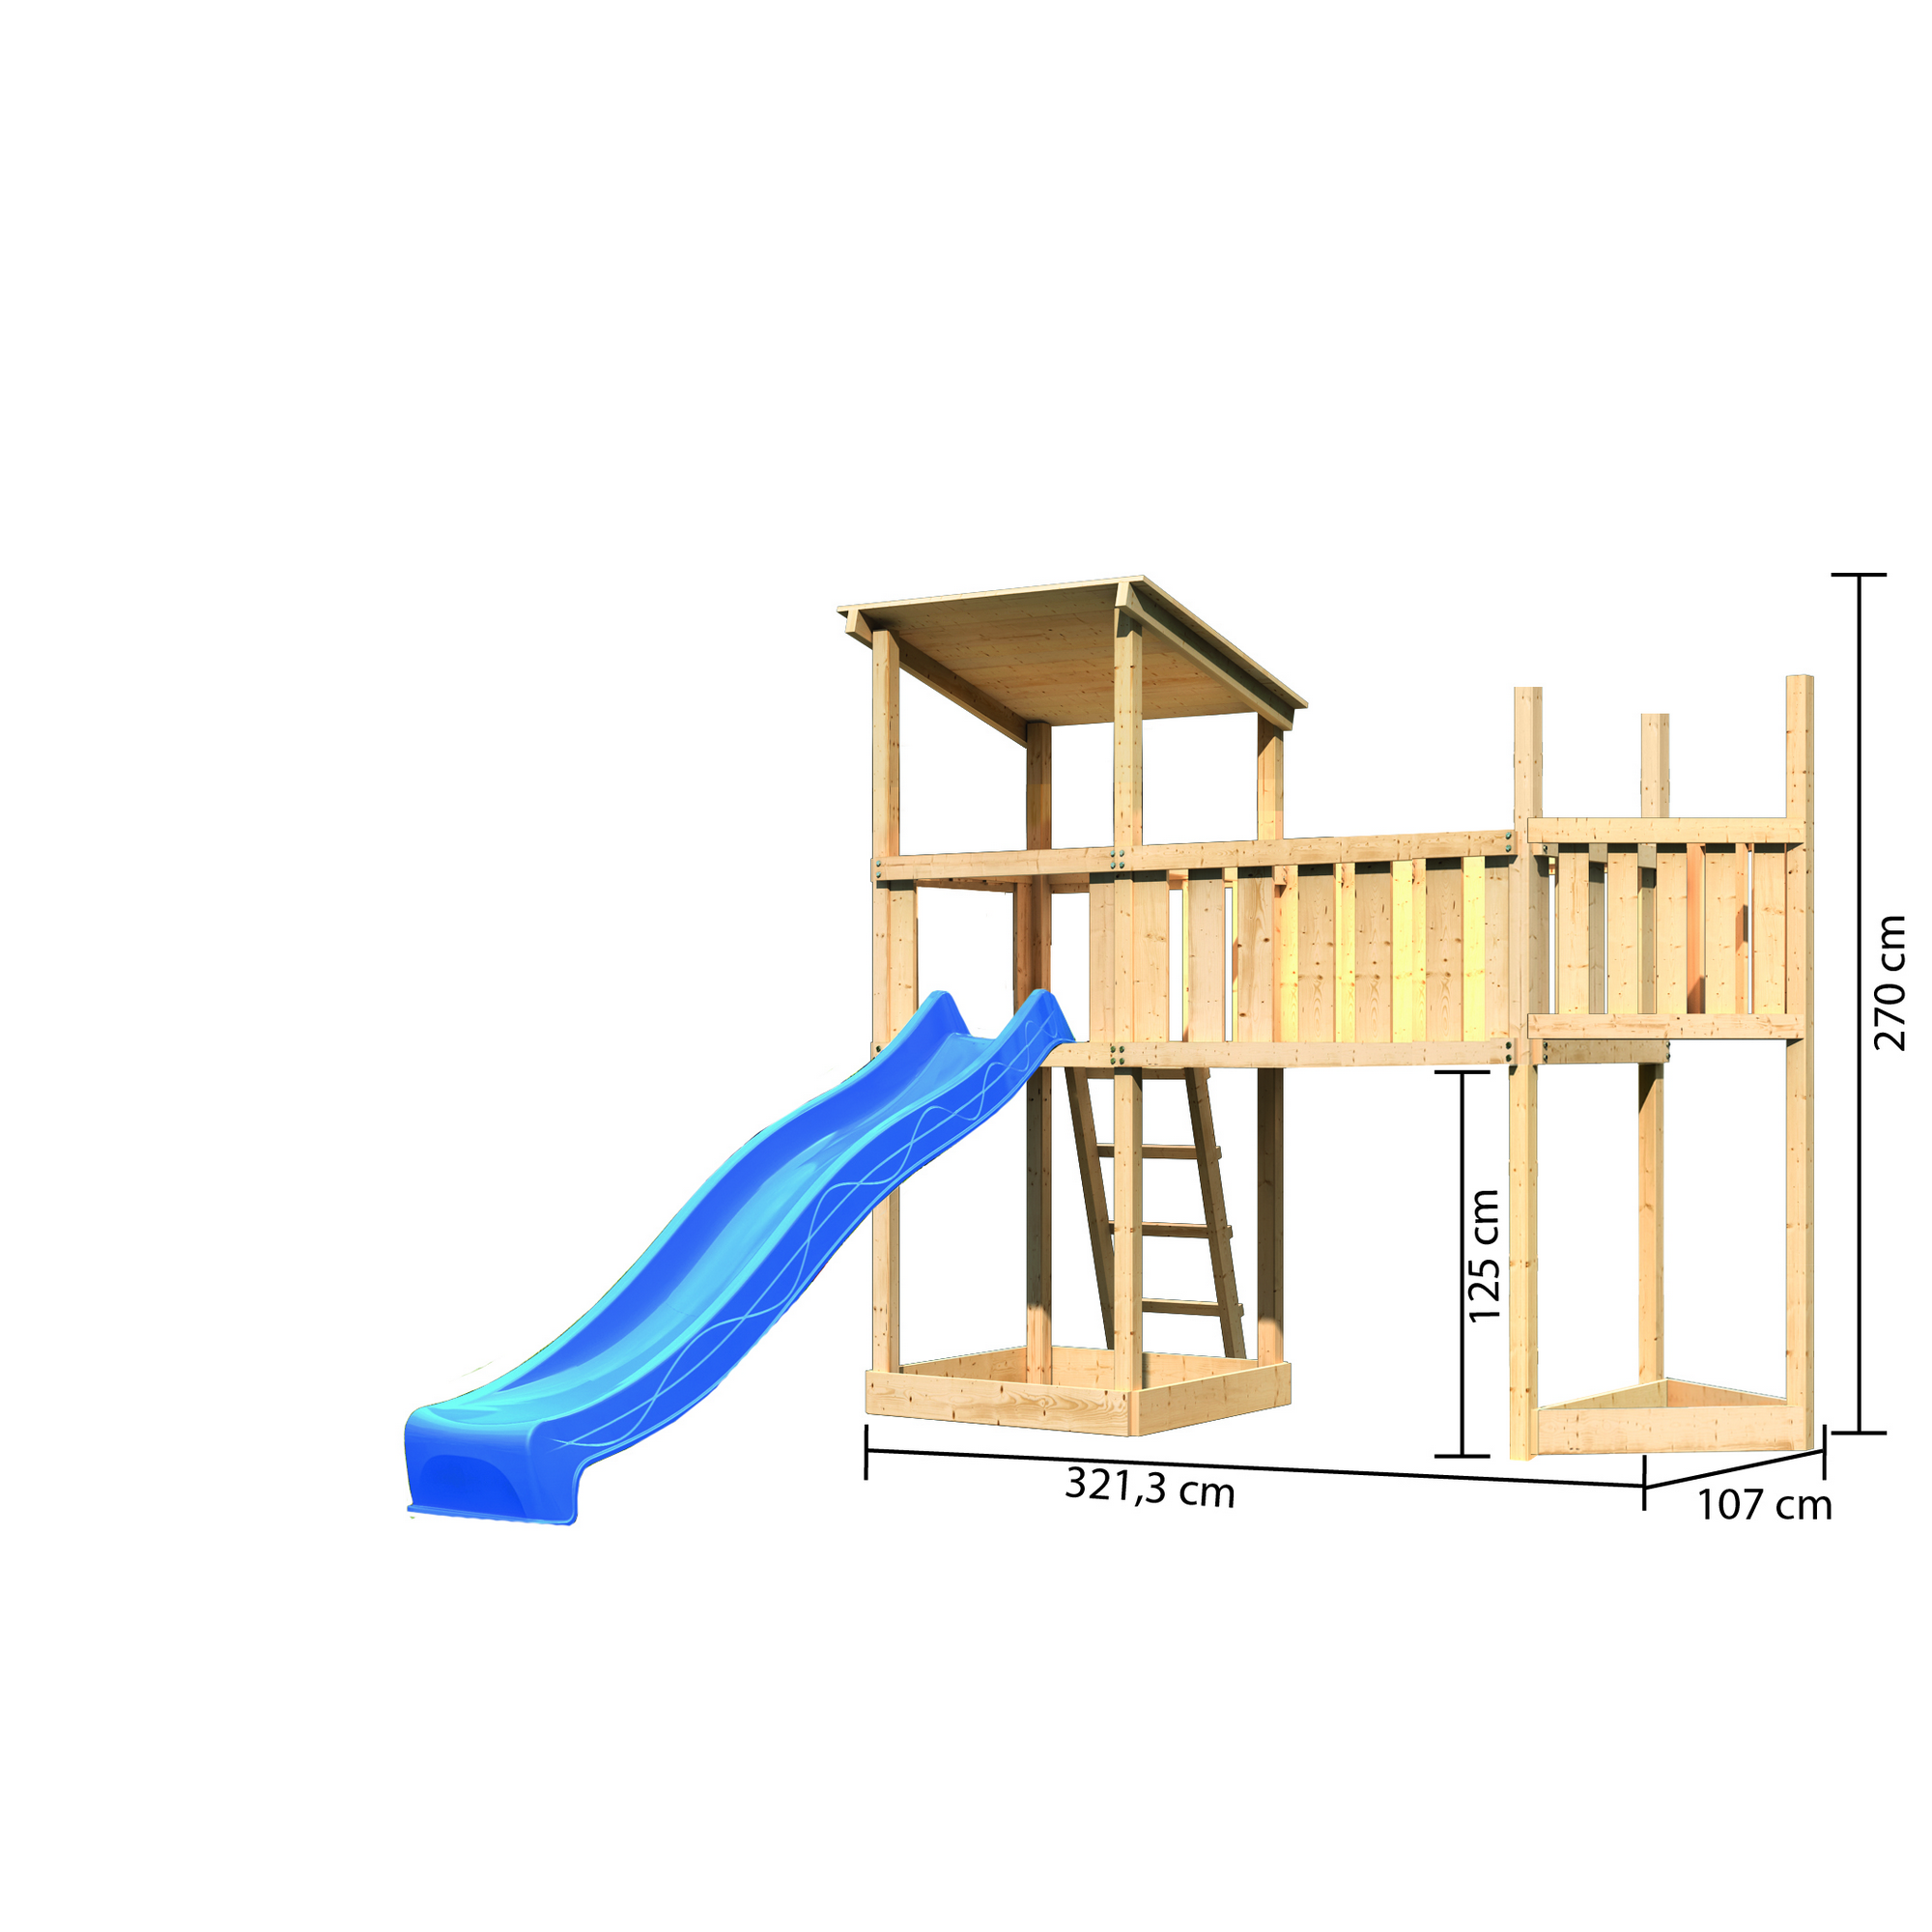 Spielturm 'Anna' Schiffsanbau oben, Anbauplattform XL, Rutsche blau, 321,3 x 107 x 270 cm + product picture